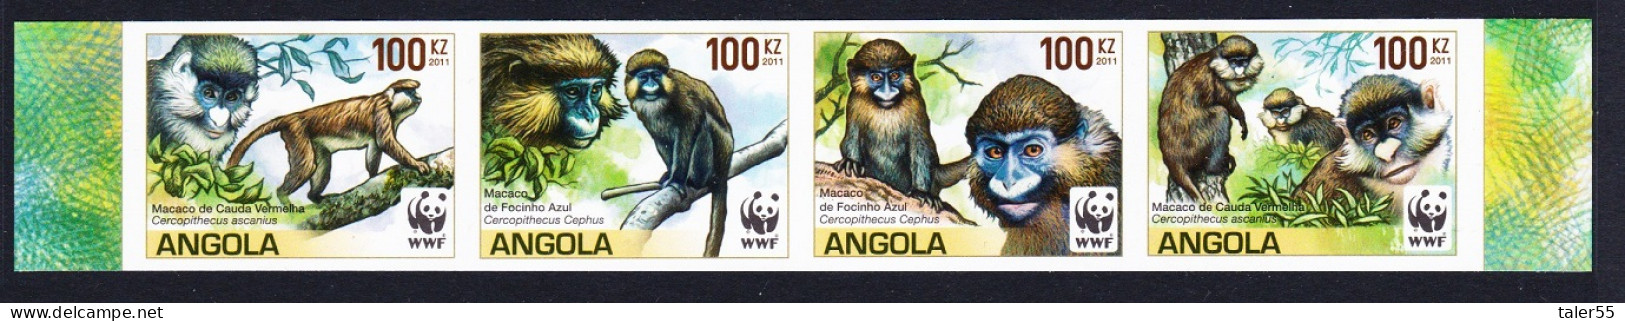 Angola WWF Monkeys Guenons 4v Imperf Strip 2011 MNH SG#1815-1818 - Angola